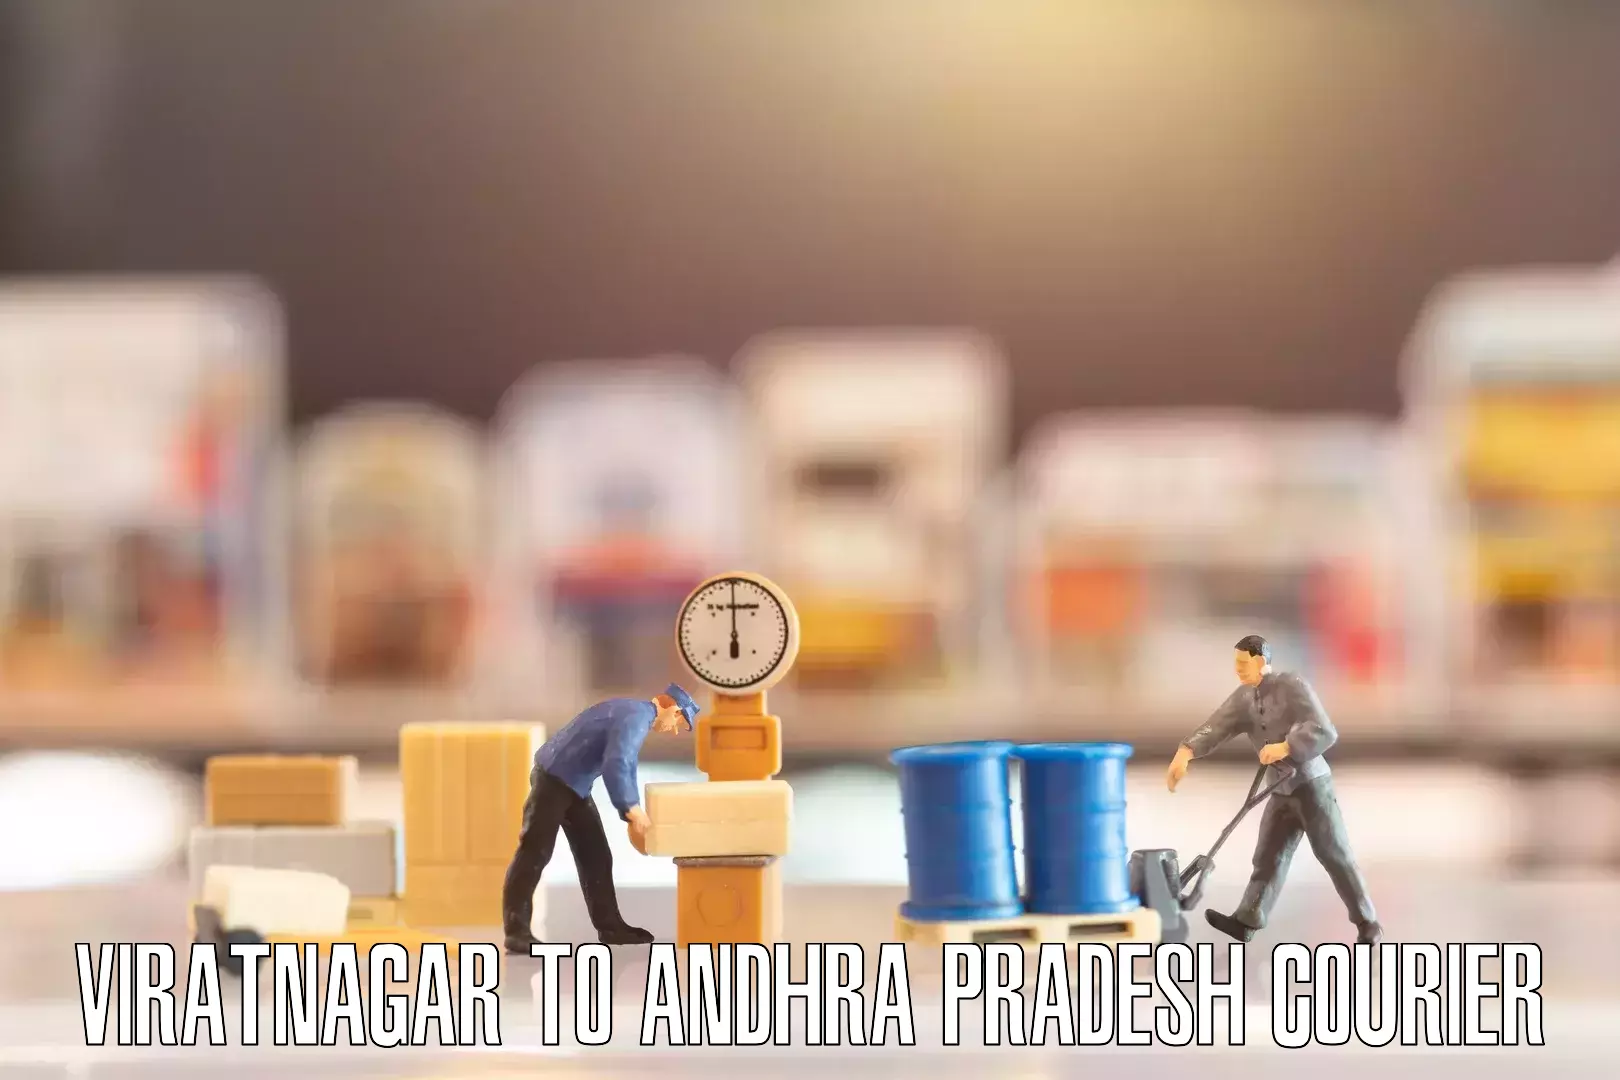 Professional moving company Viratnagar to Andhra Pradesh